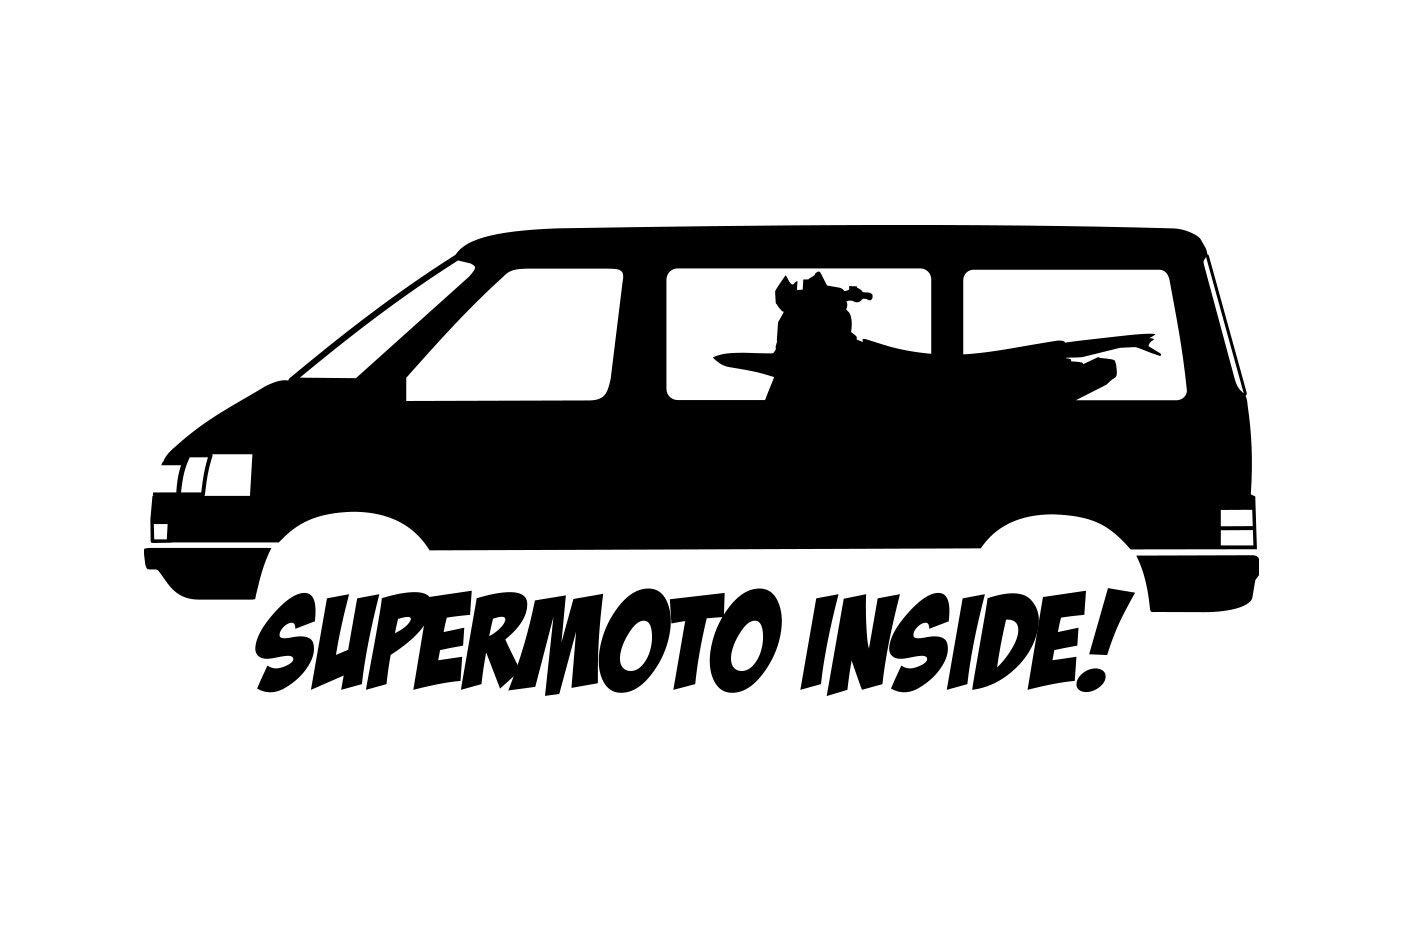 Aufkleber mit dem Schriftzug "Supermoto Inside" und einem VW T4